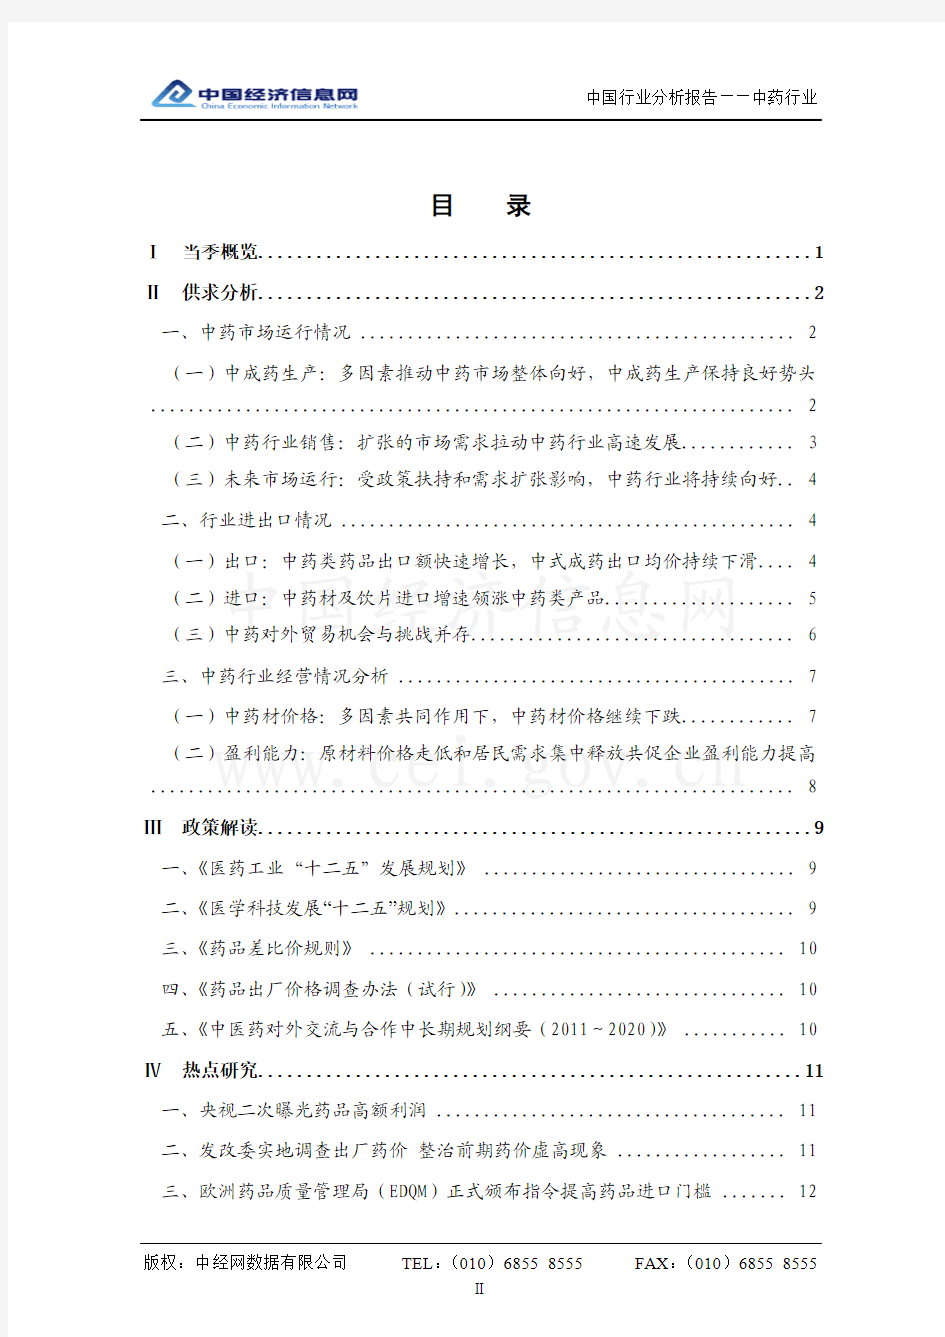 [2011年Q4]中国中药行业分析报告